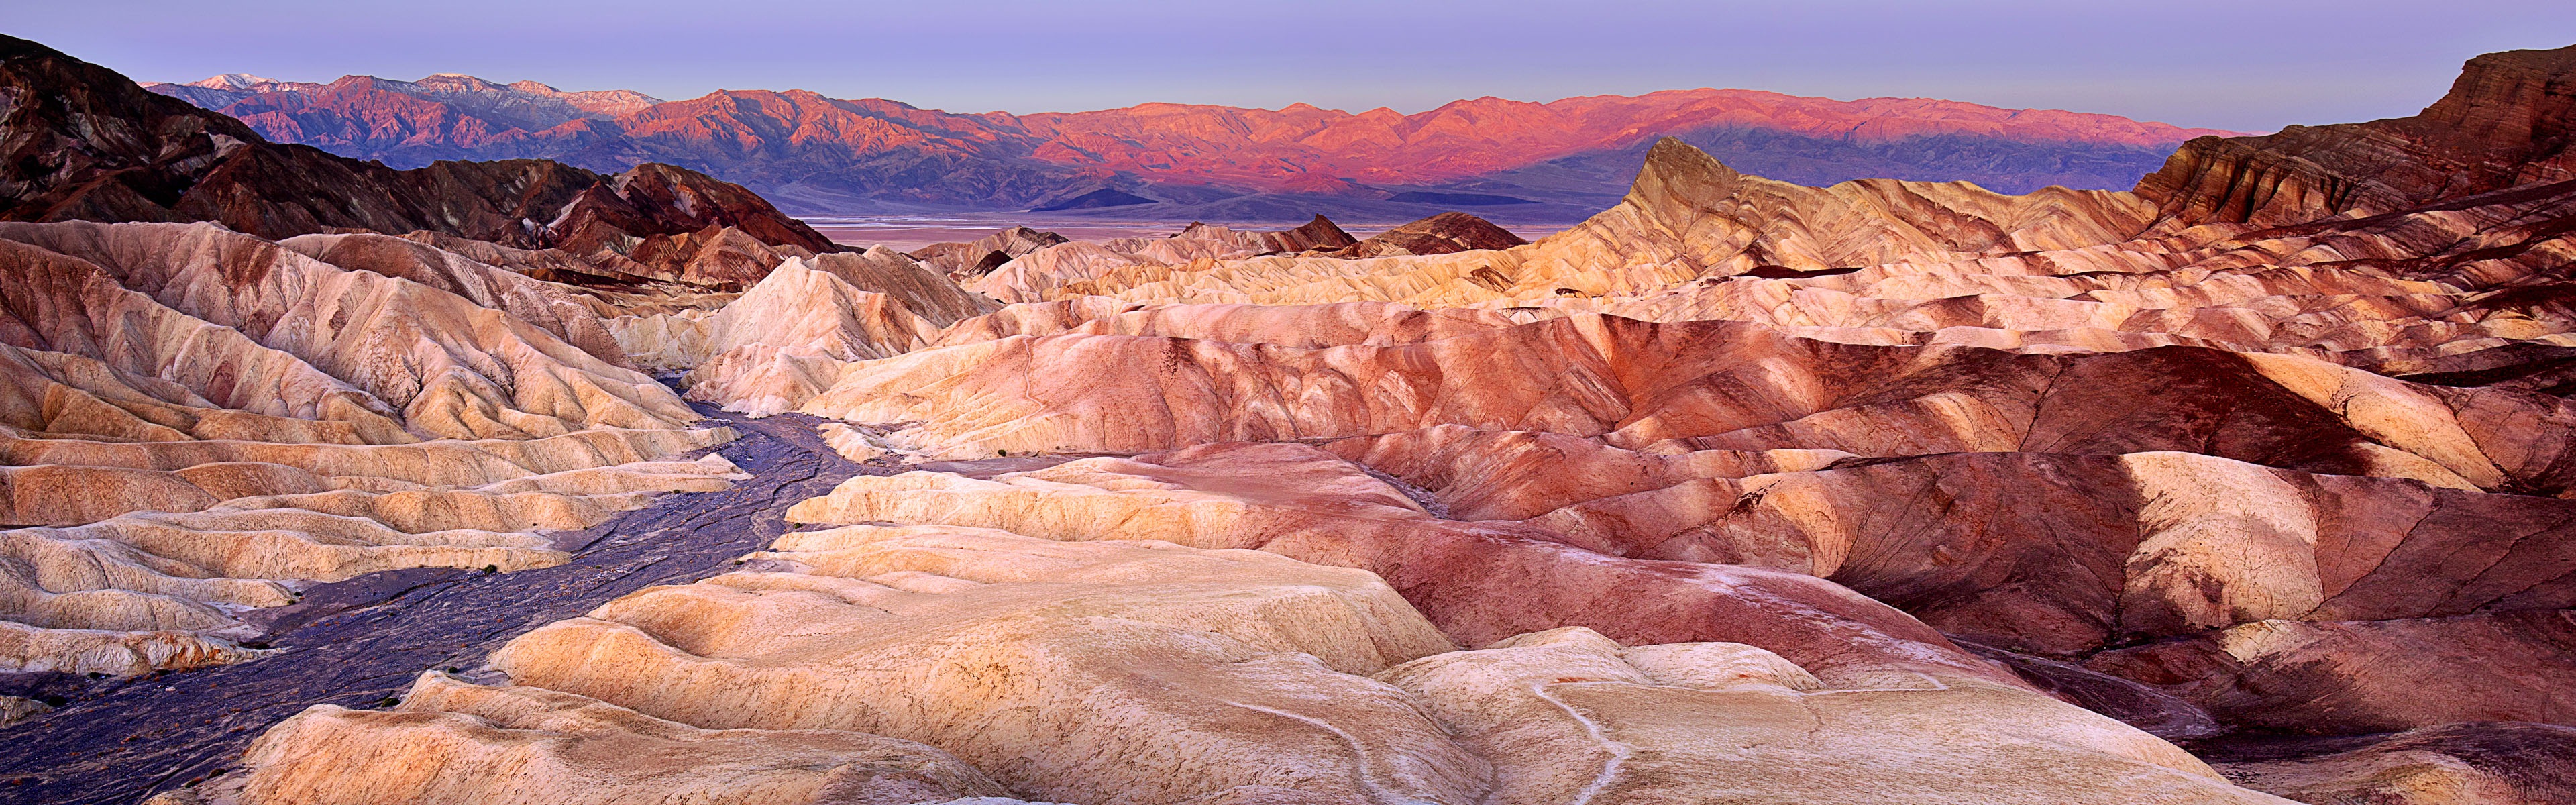 Les déserts chauds et arides, de Windows 8 fonds d'écran widescreen panoramique #10 - 3840x1200